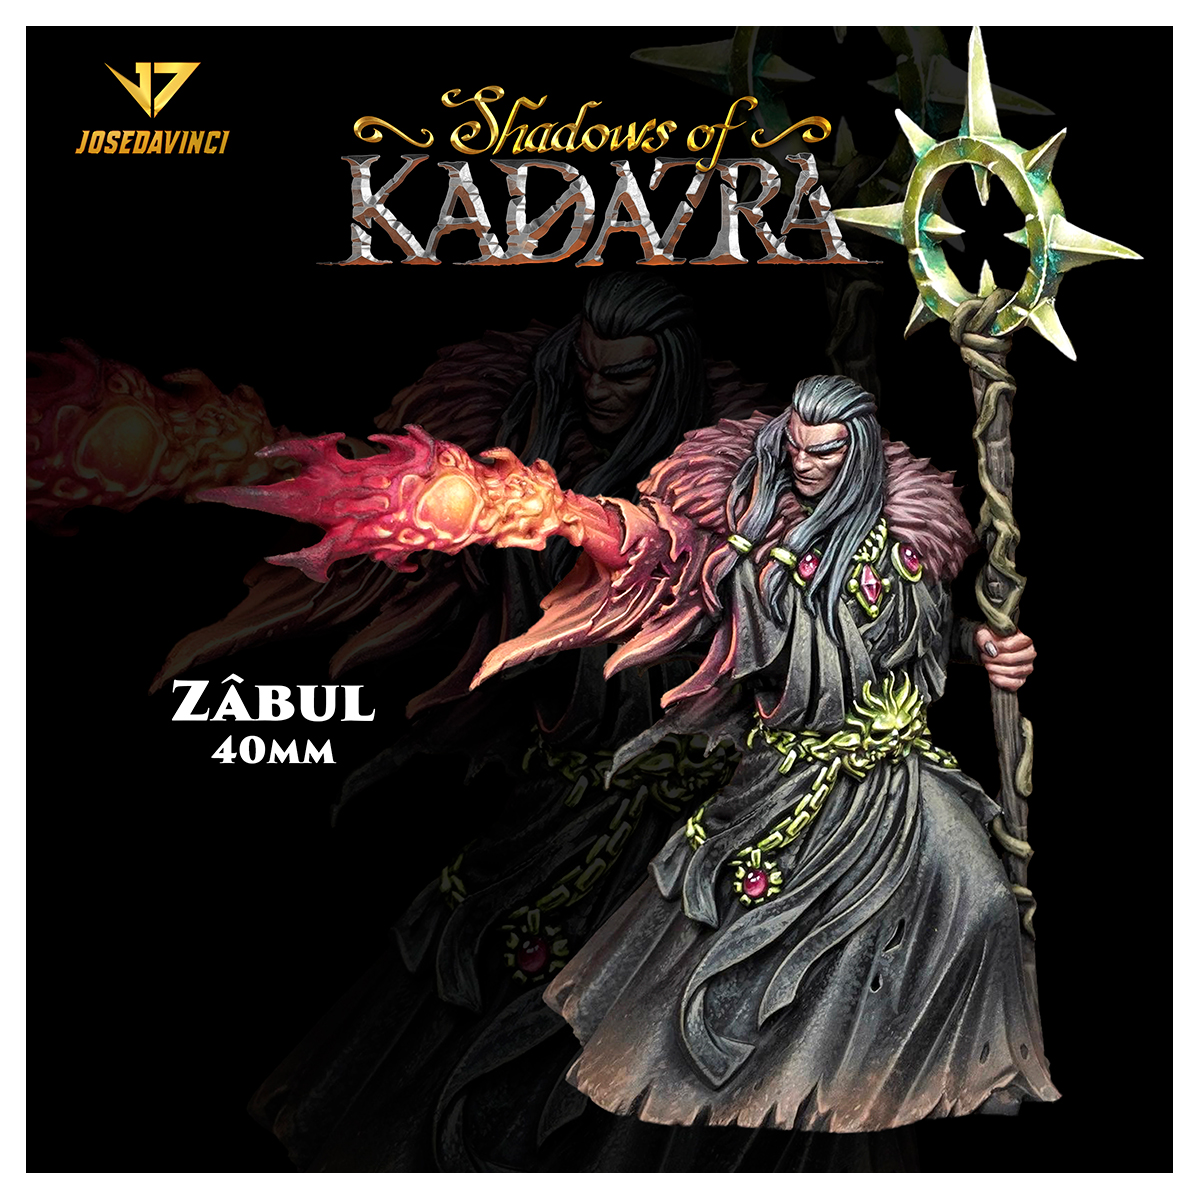 Shadows Of Kadazra – Zâbul 40mm by Josedavinci